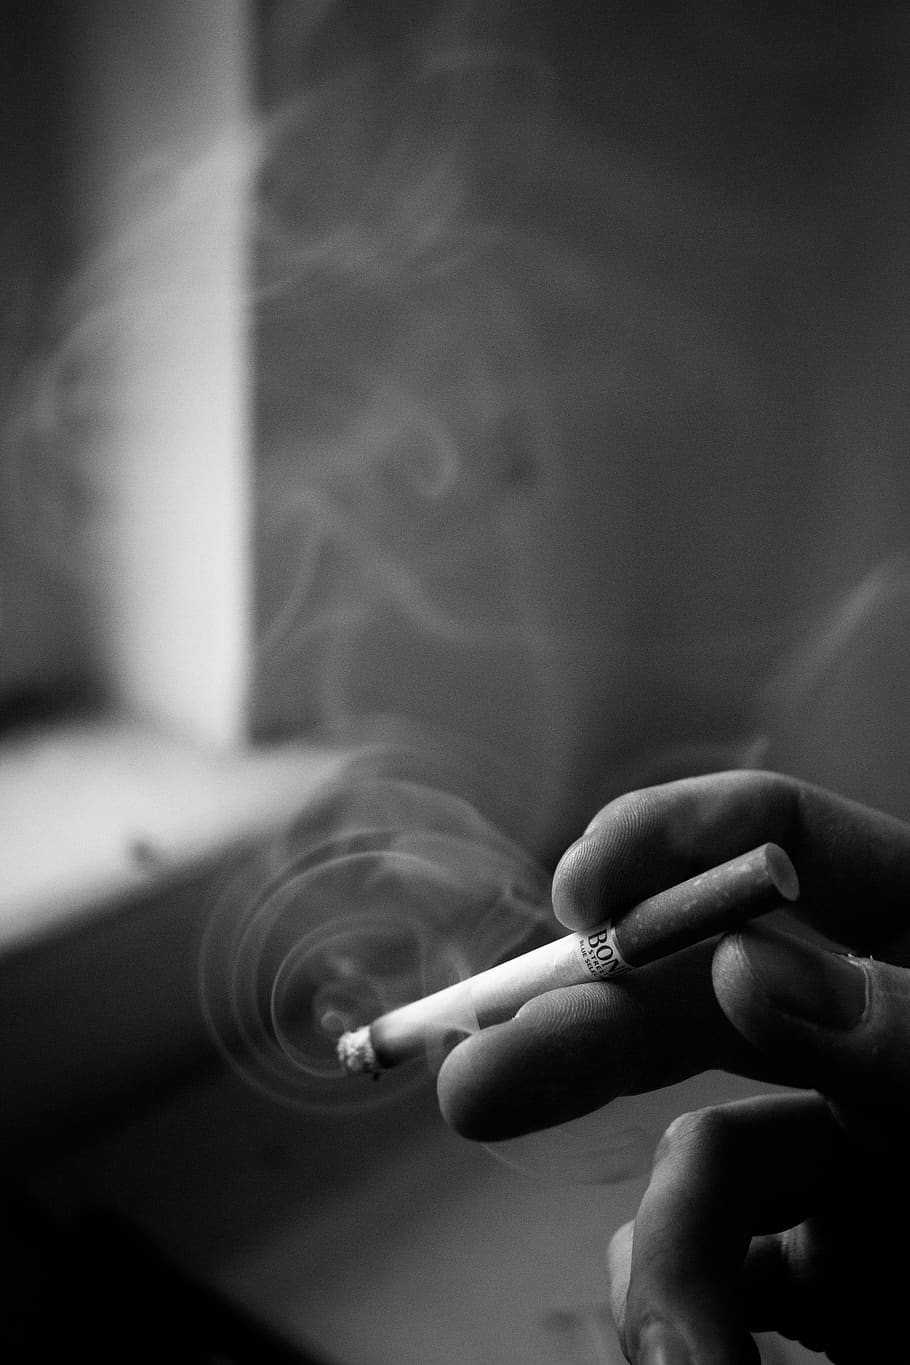 rokok, asap, jendela, musim gugur, bayangan, jari, kebiasaan buruk, masalah merokok, masalah sosial, memegang